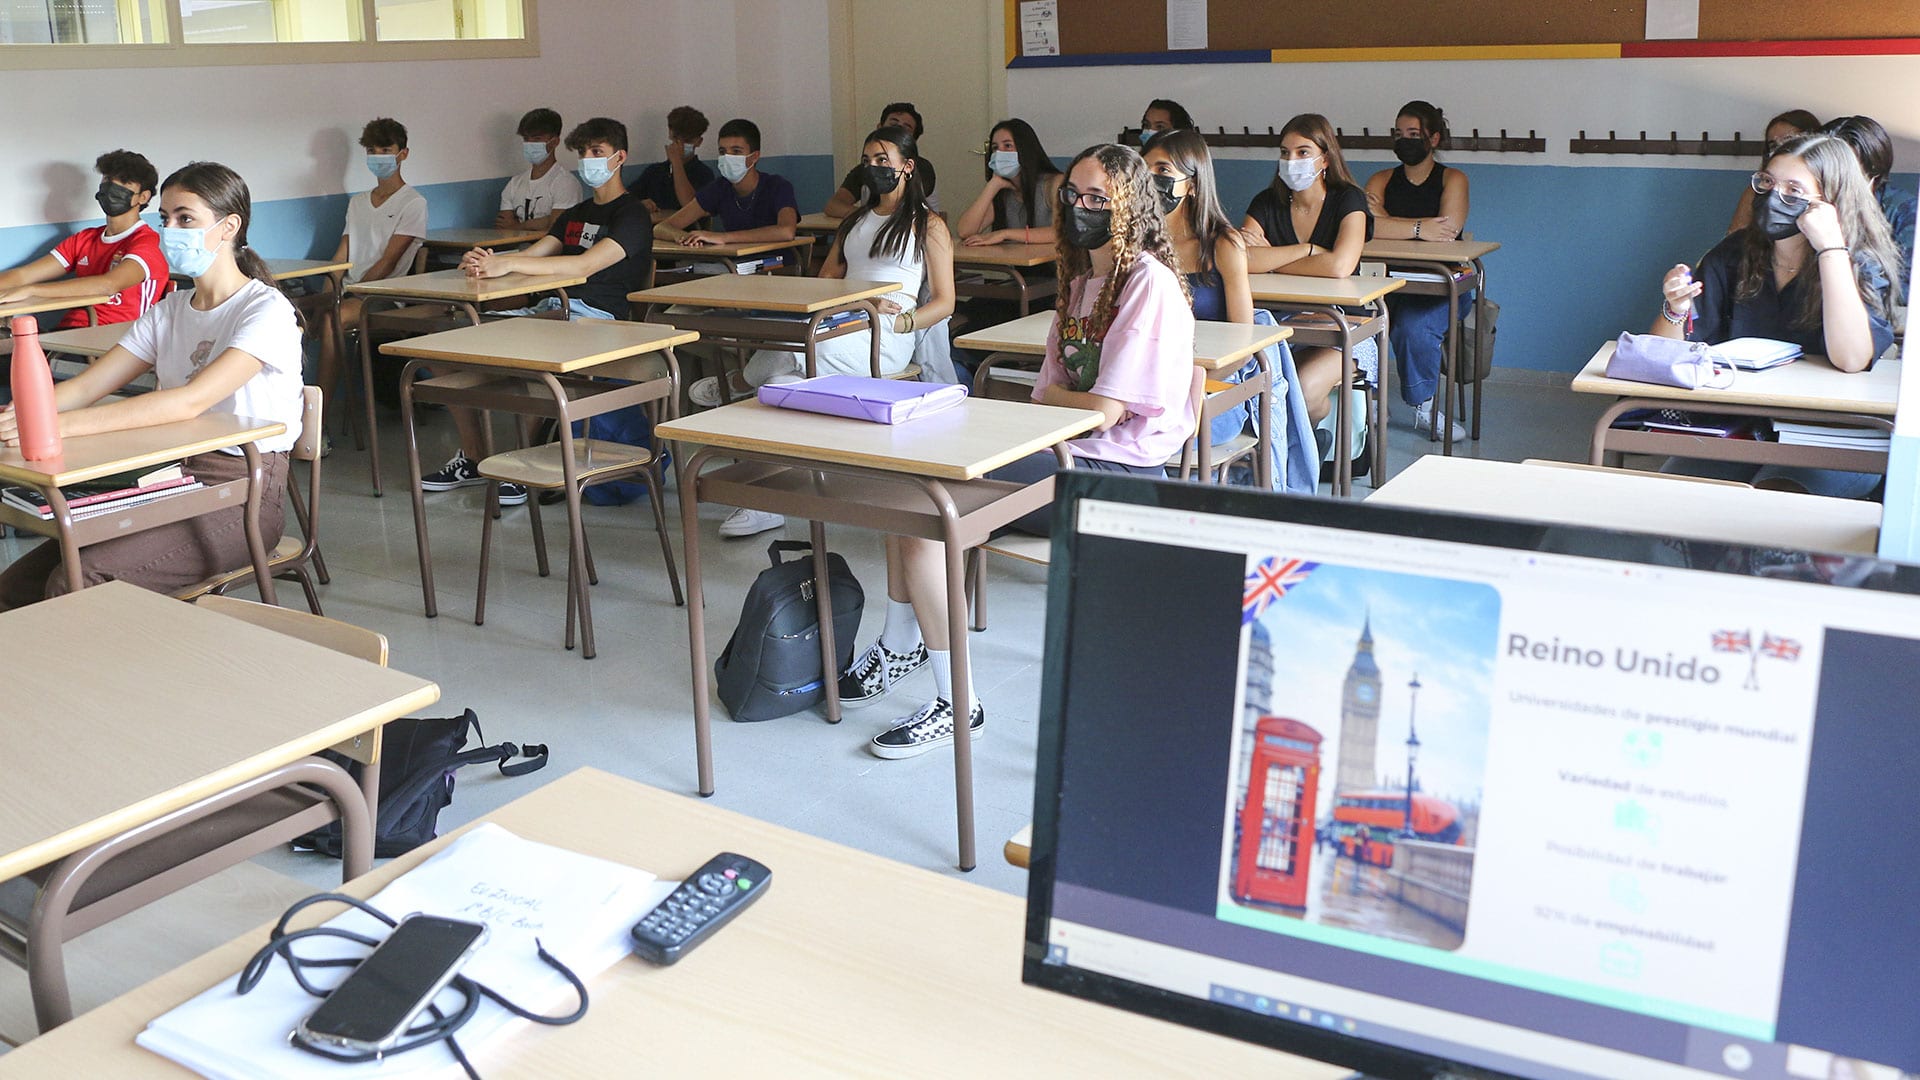 Alumnos atienden en clase a la explicación de cómo estudiar en una universidad en el extranjero.